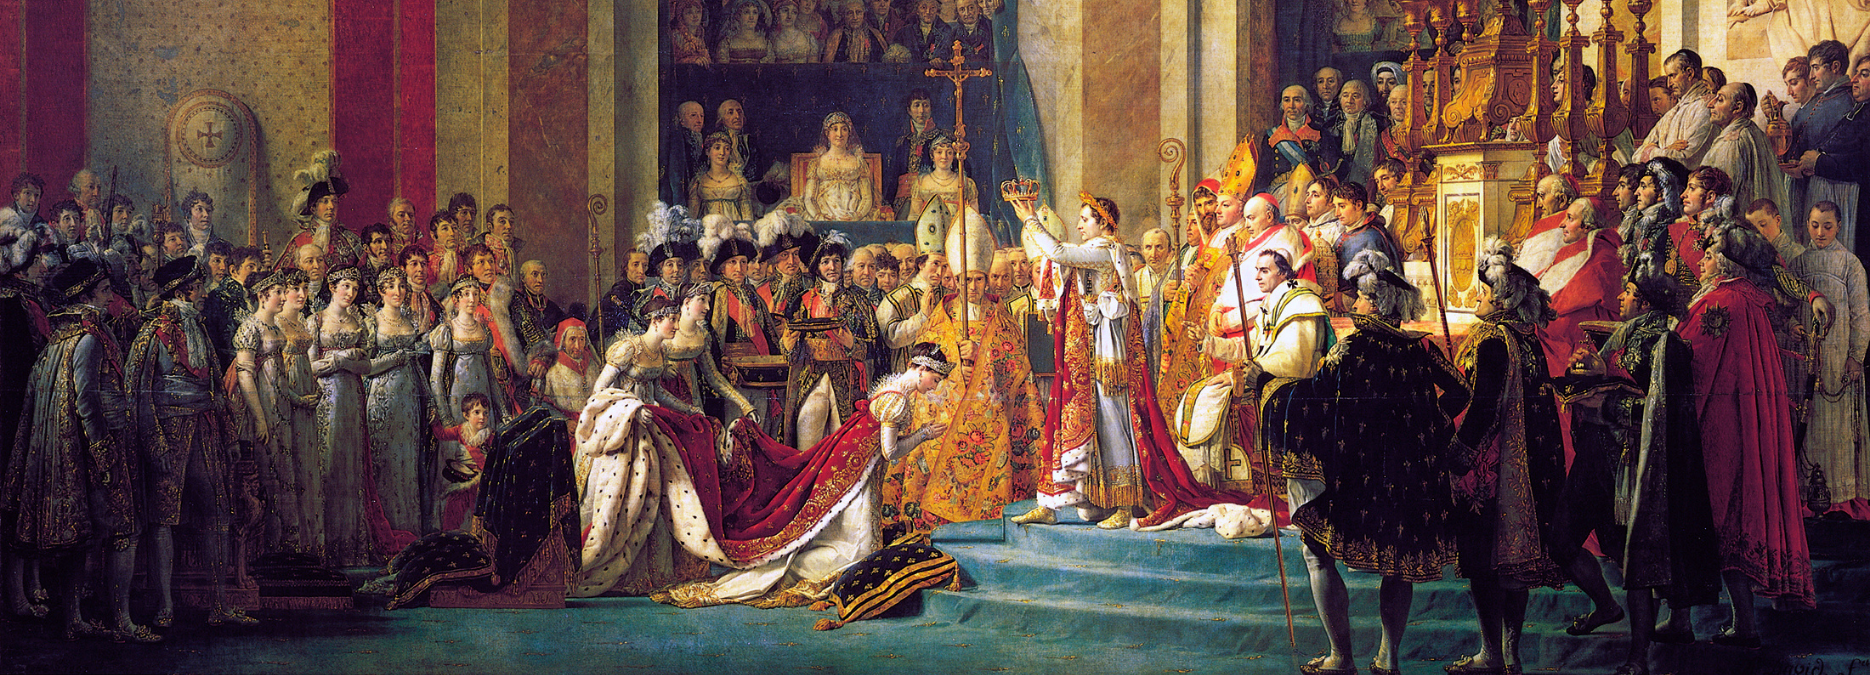 Le Sacre de Napoléon par Jacques-Louis David